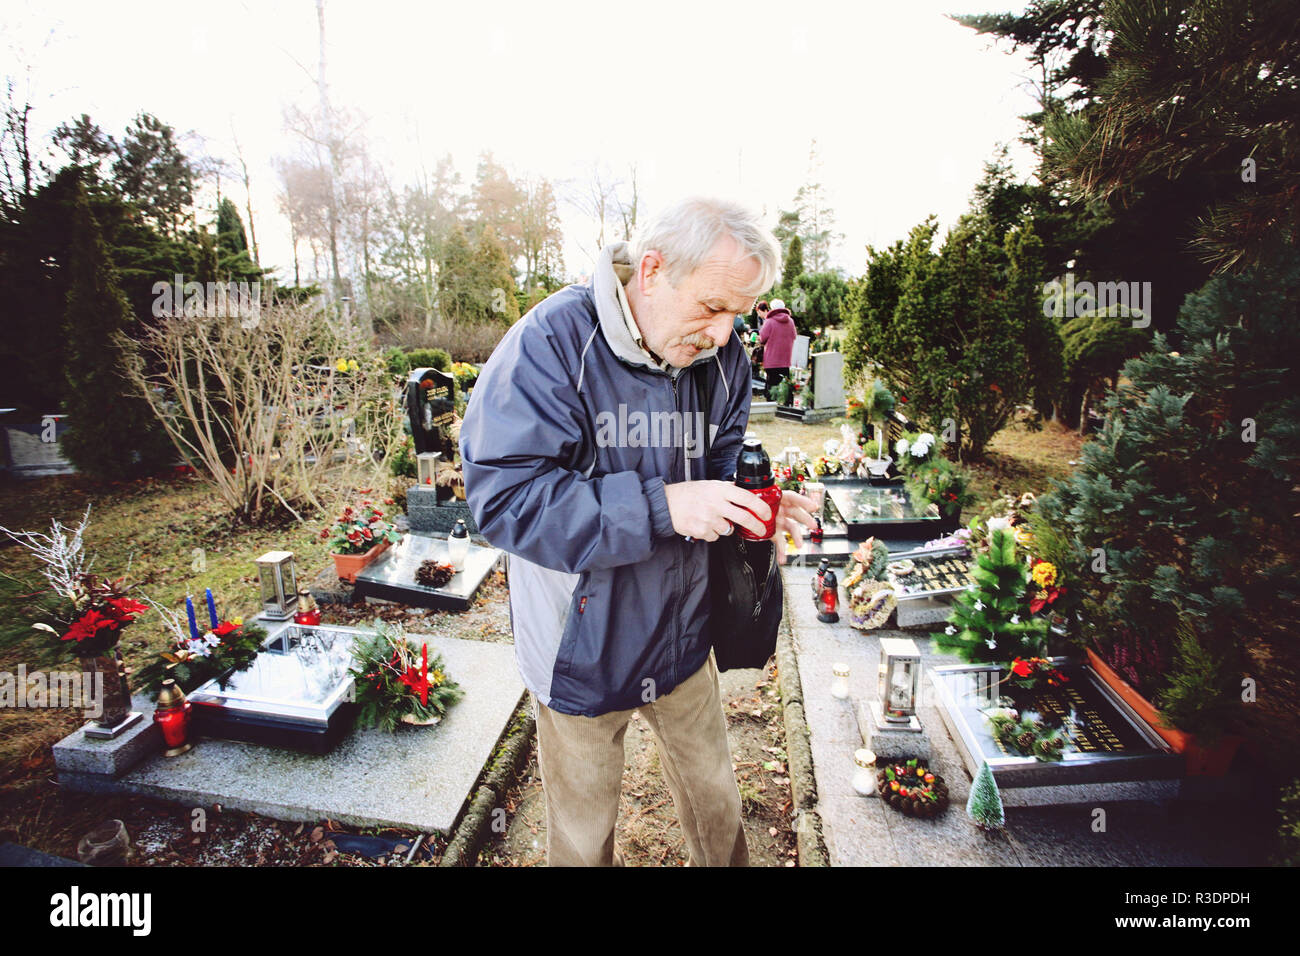 Stara Boleslav, tschechische Republik, Europa, 24. Dezember 2011: Traditionelle Weihnachten Friedhof besuchen Stockfoto